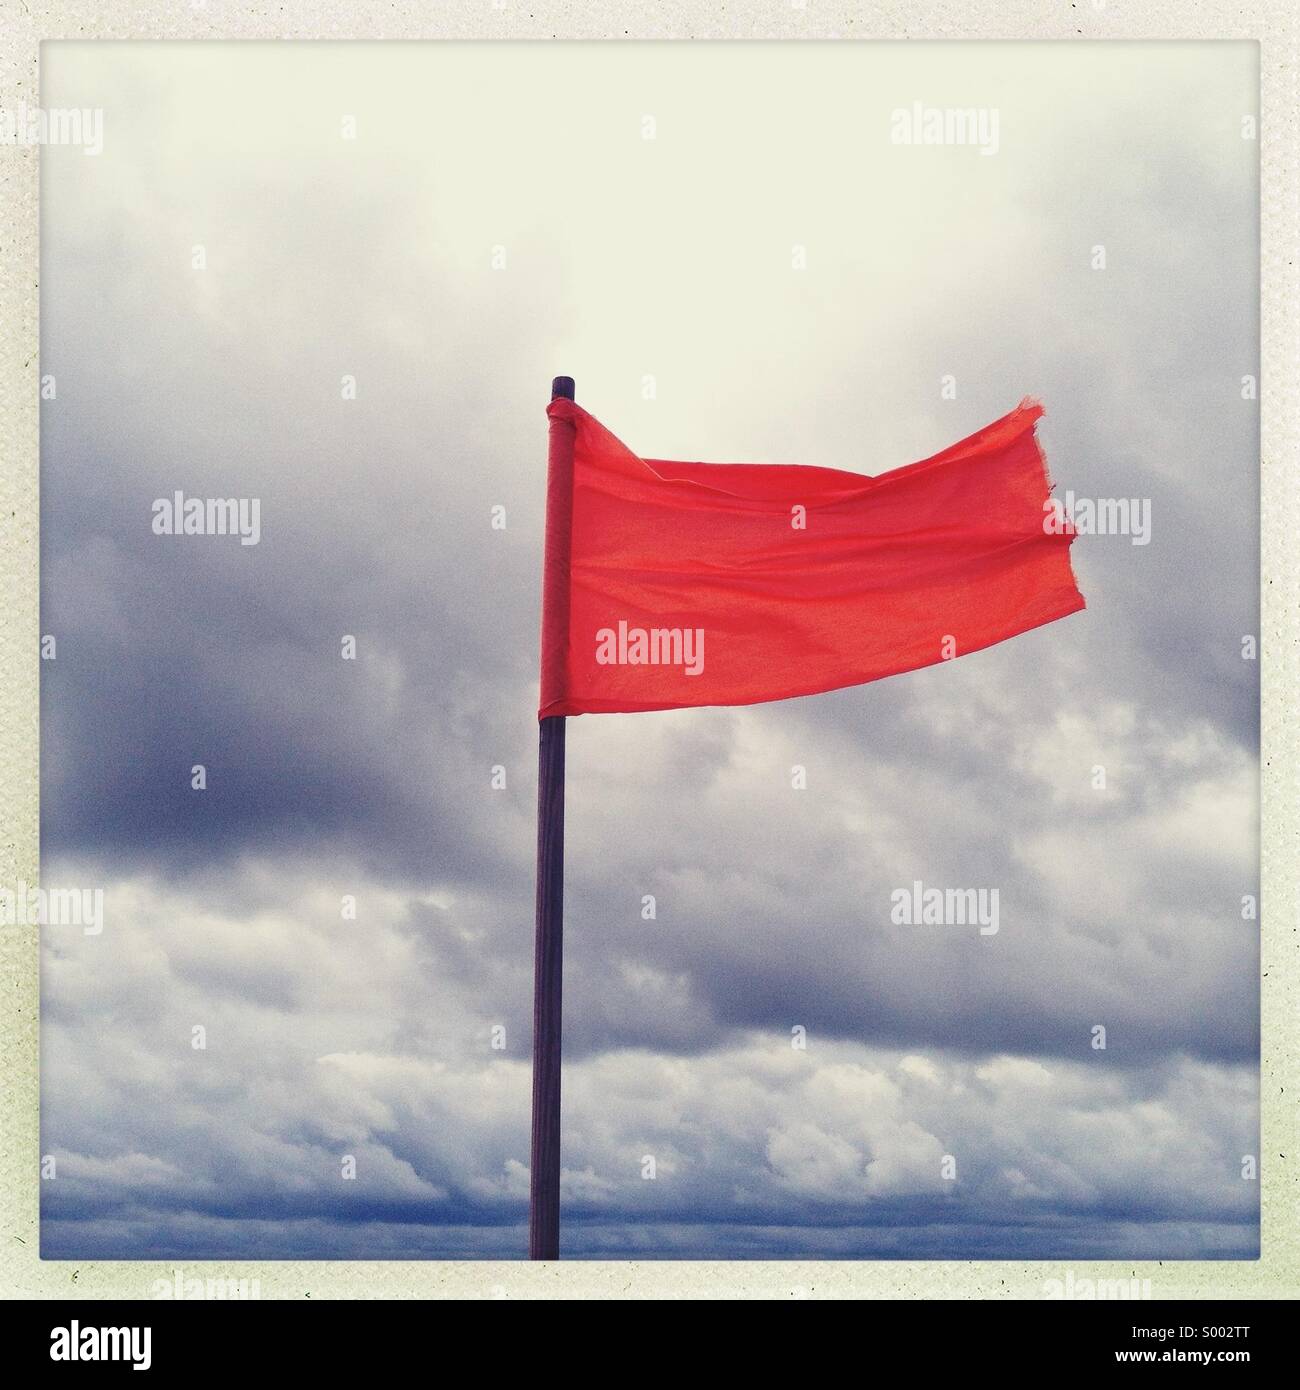 Un drapeau rouge qui souffle sur une plage face à l'océan. Pas de piscine admis Banque D'Images